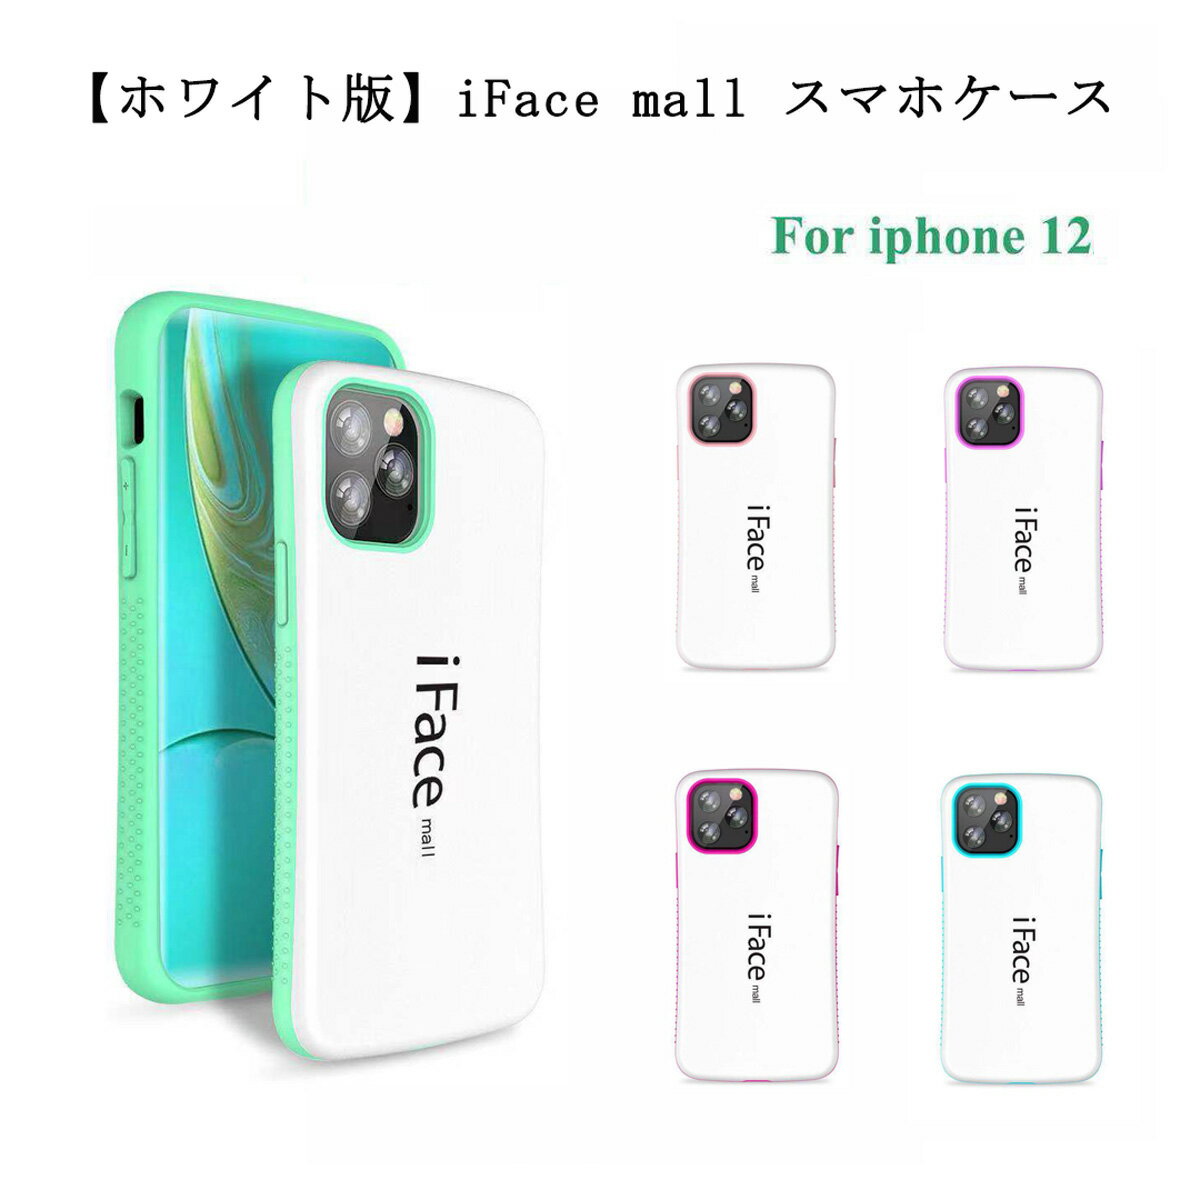 【あす楽 P10倍 クーポンあり】 ホワイト版 iFace mall iPhone 12 ケース アイフェイス モール iPhone12 カバー ワイヤレス充電 アイフォン12 スマホケース 耐衝撃 可愛い TPU バンパー